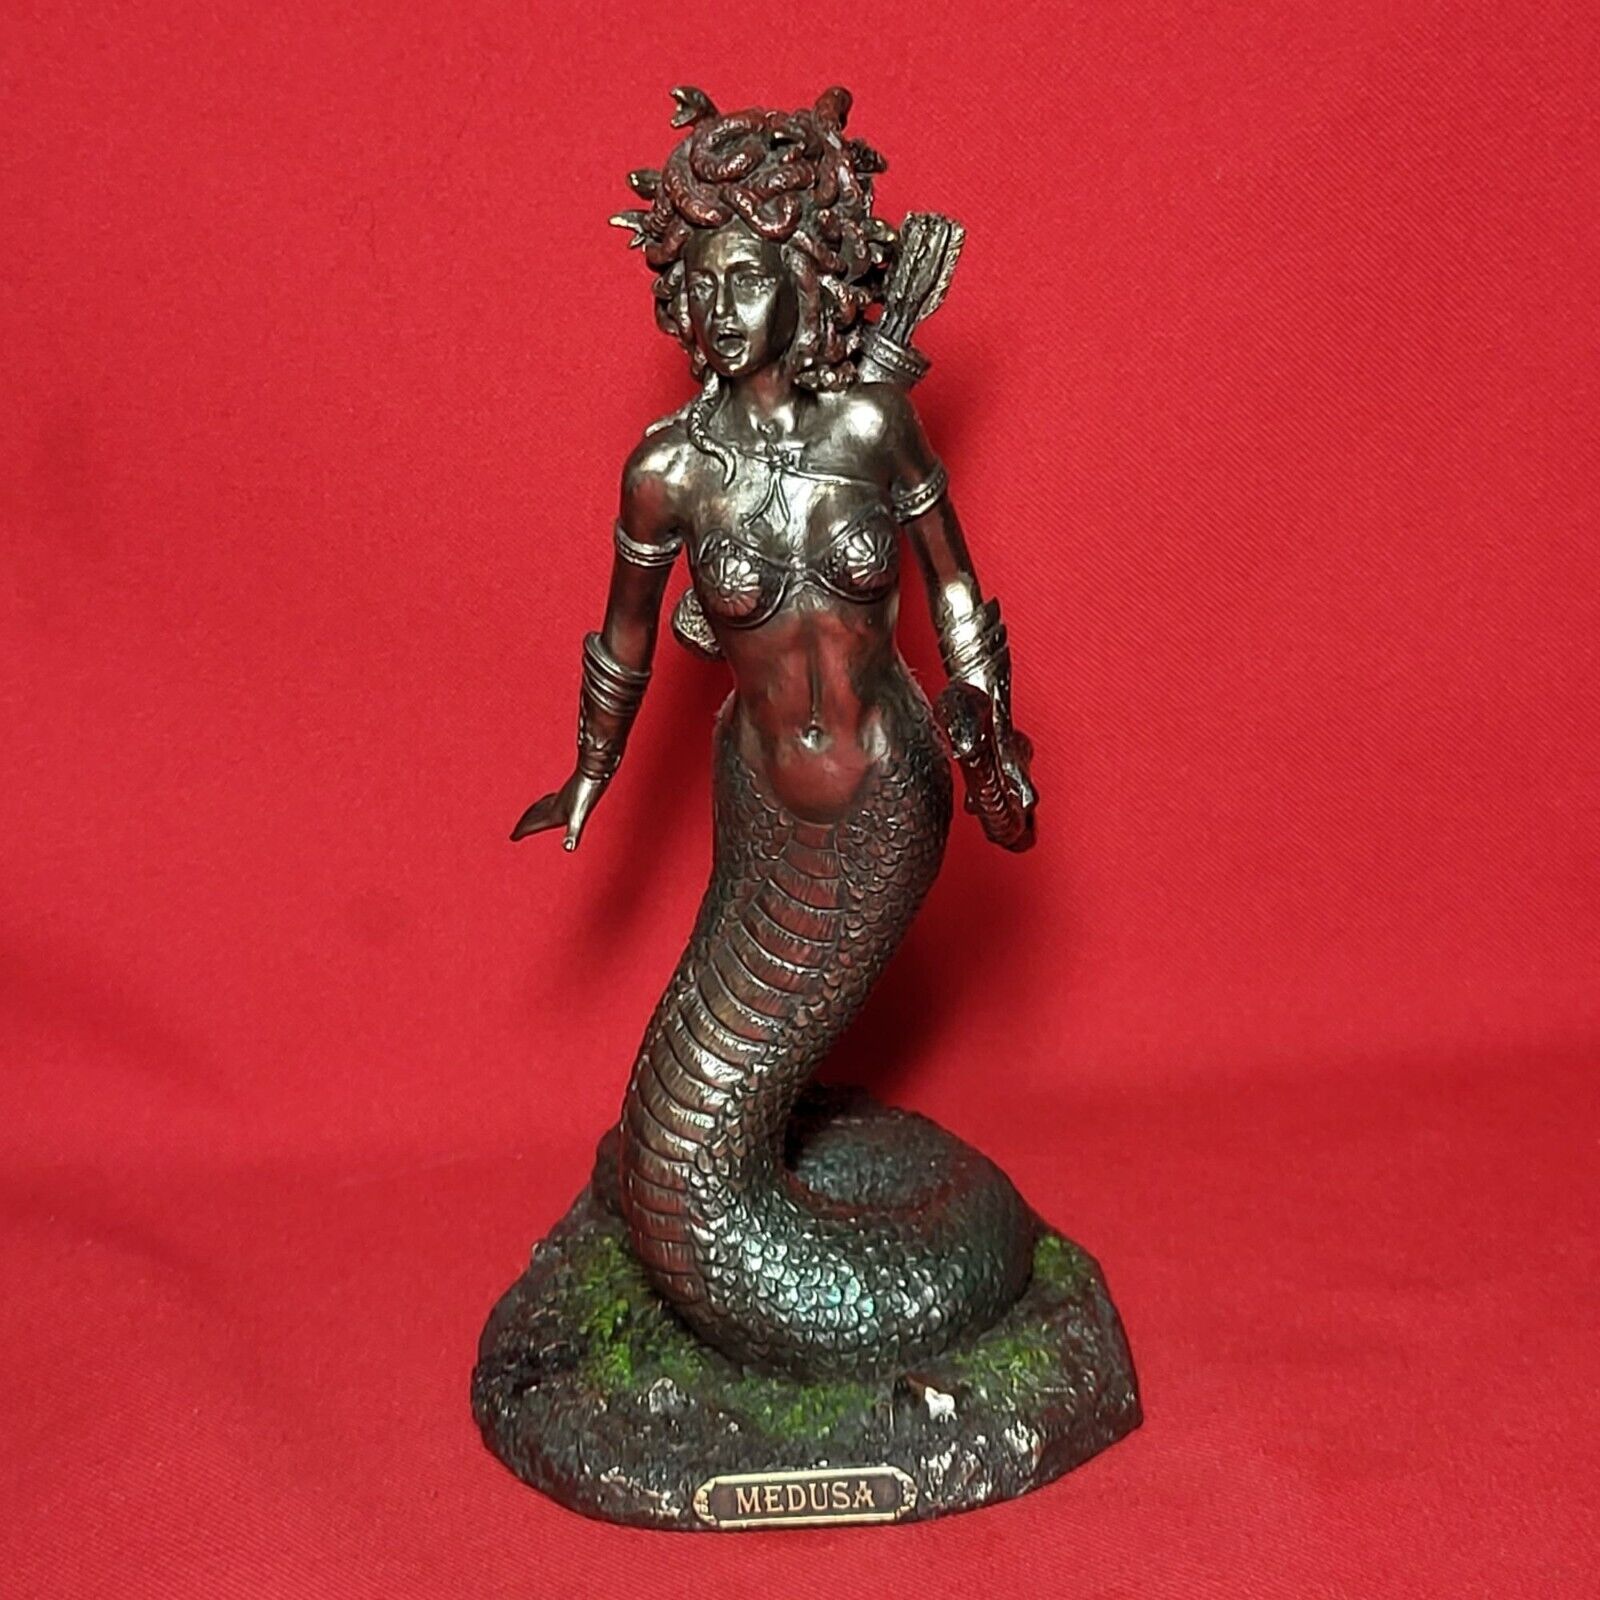 Veronese Design Medusa Greek Gorgon Serpent Monster Standing Holding Bow Statue